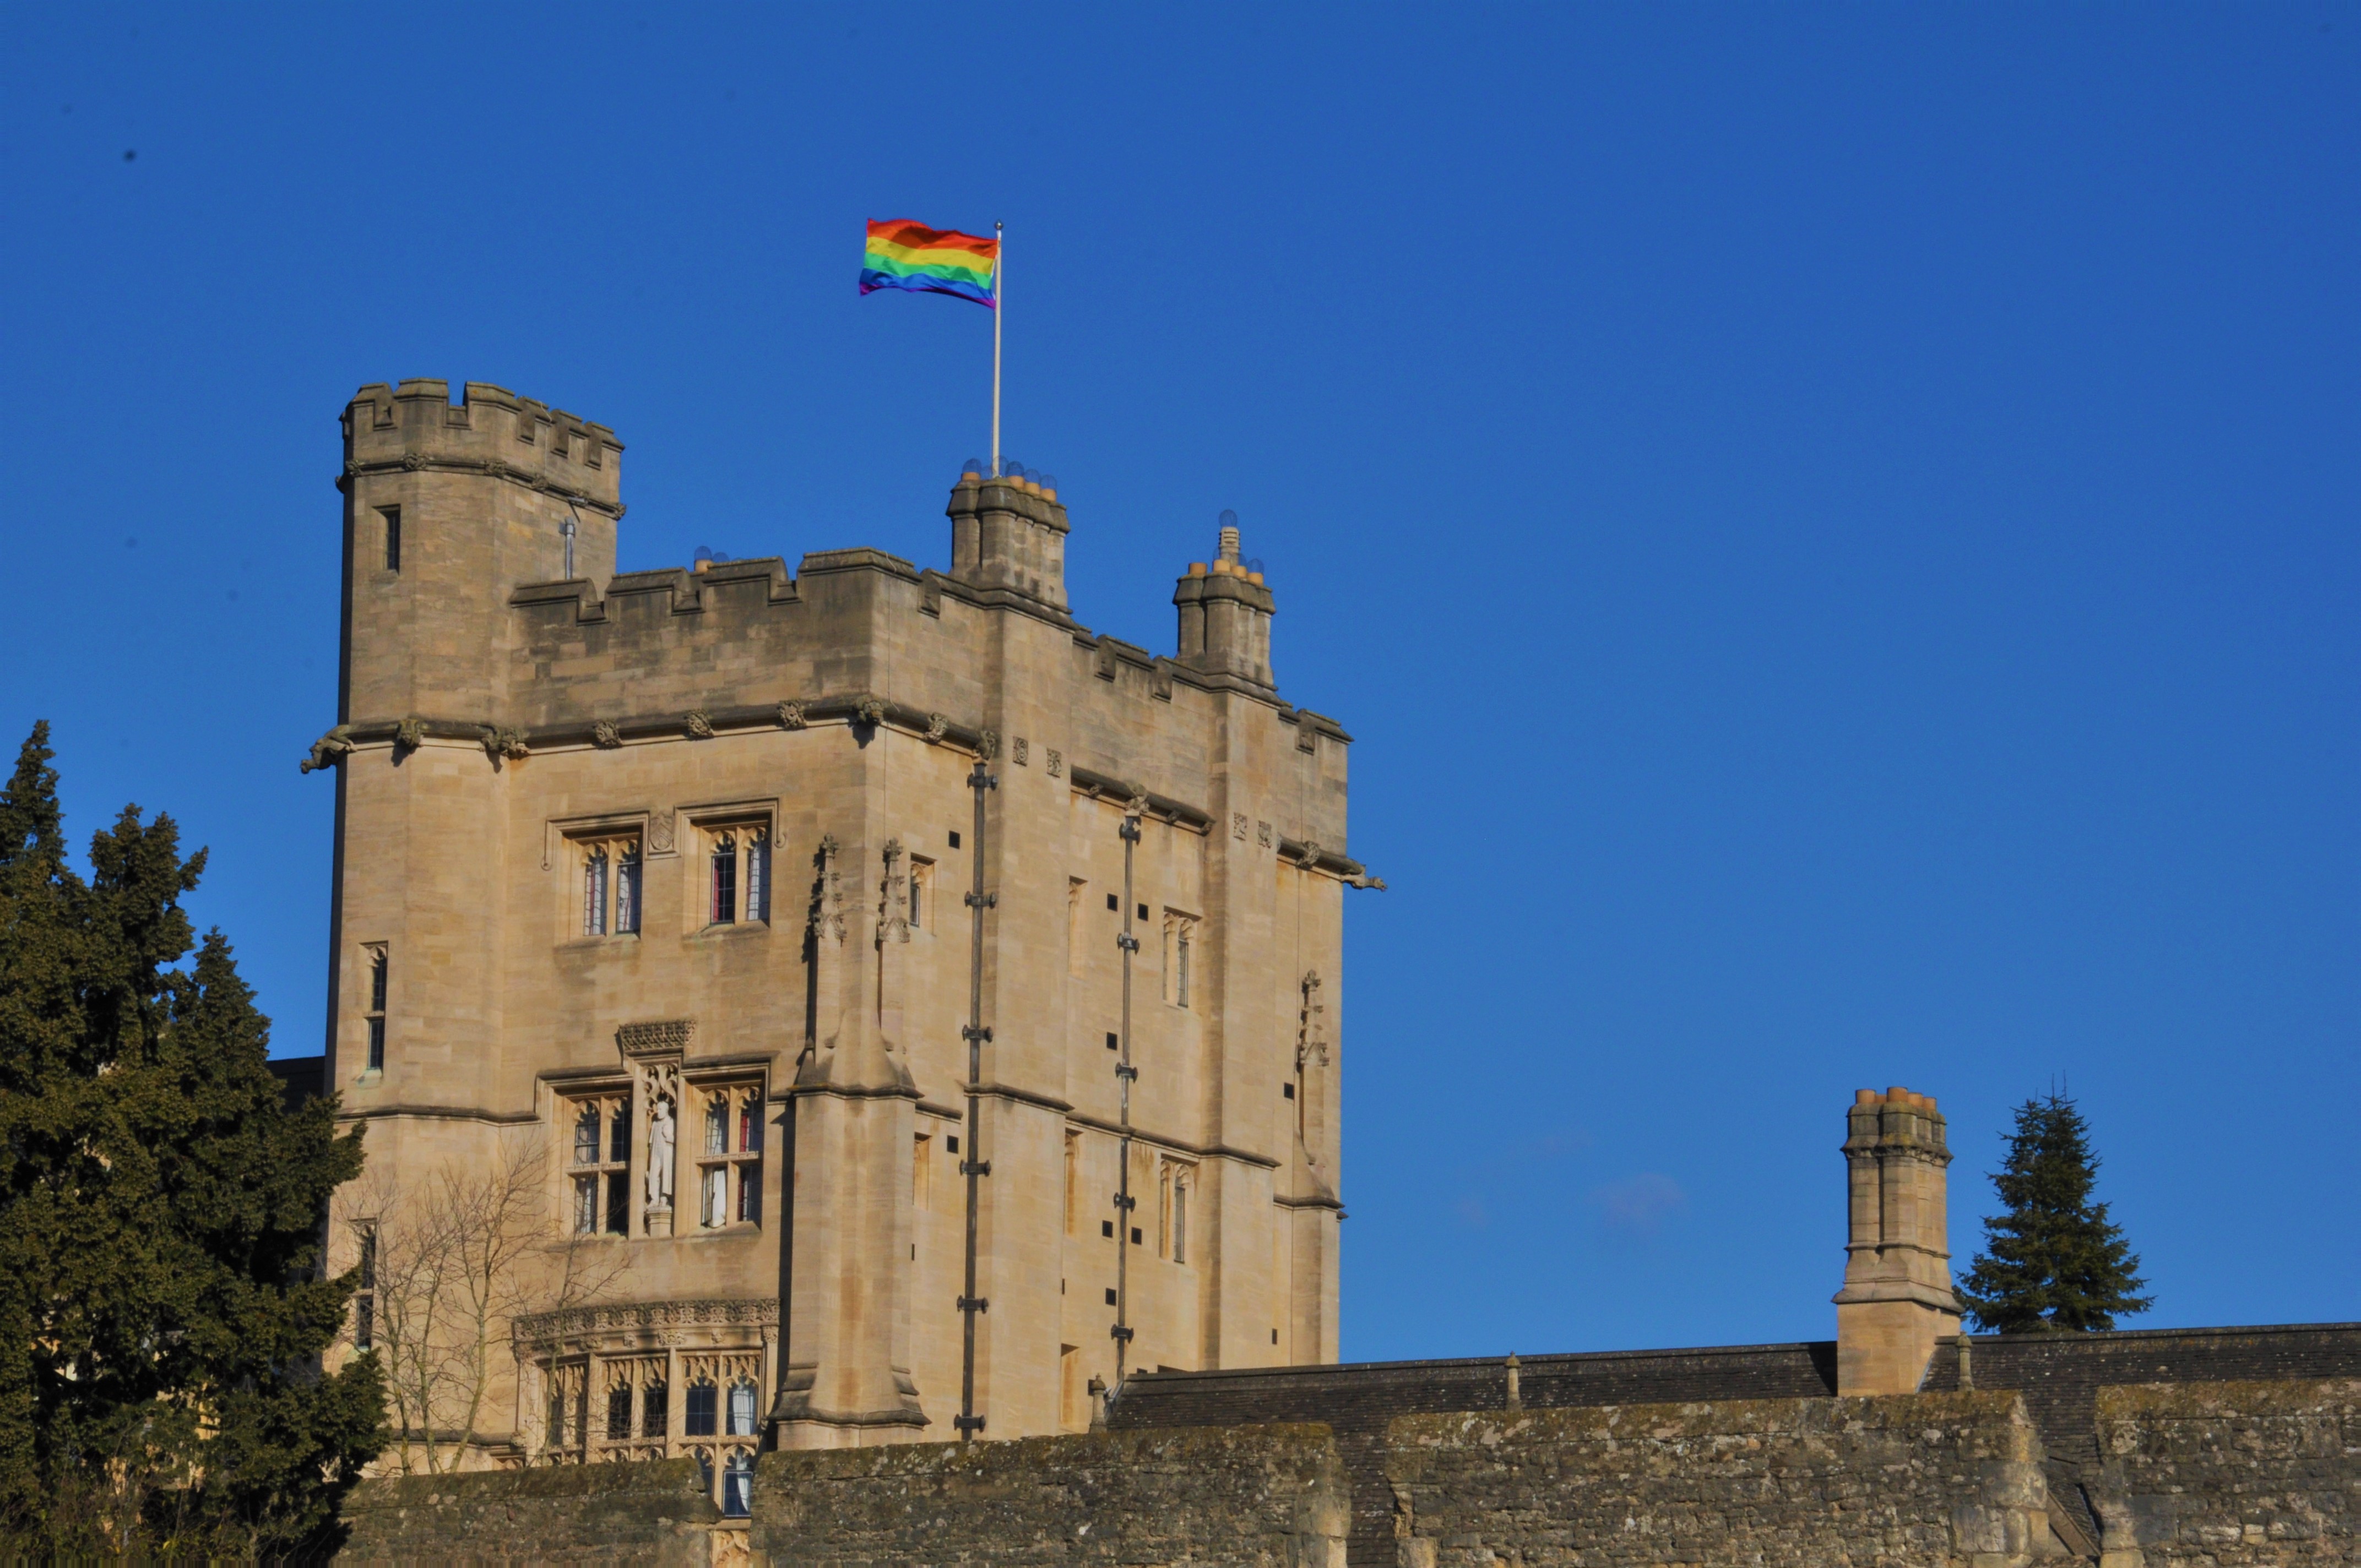 Rainbow Flag flying on the Robinson Tower